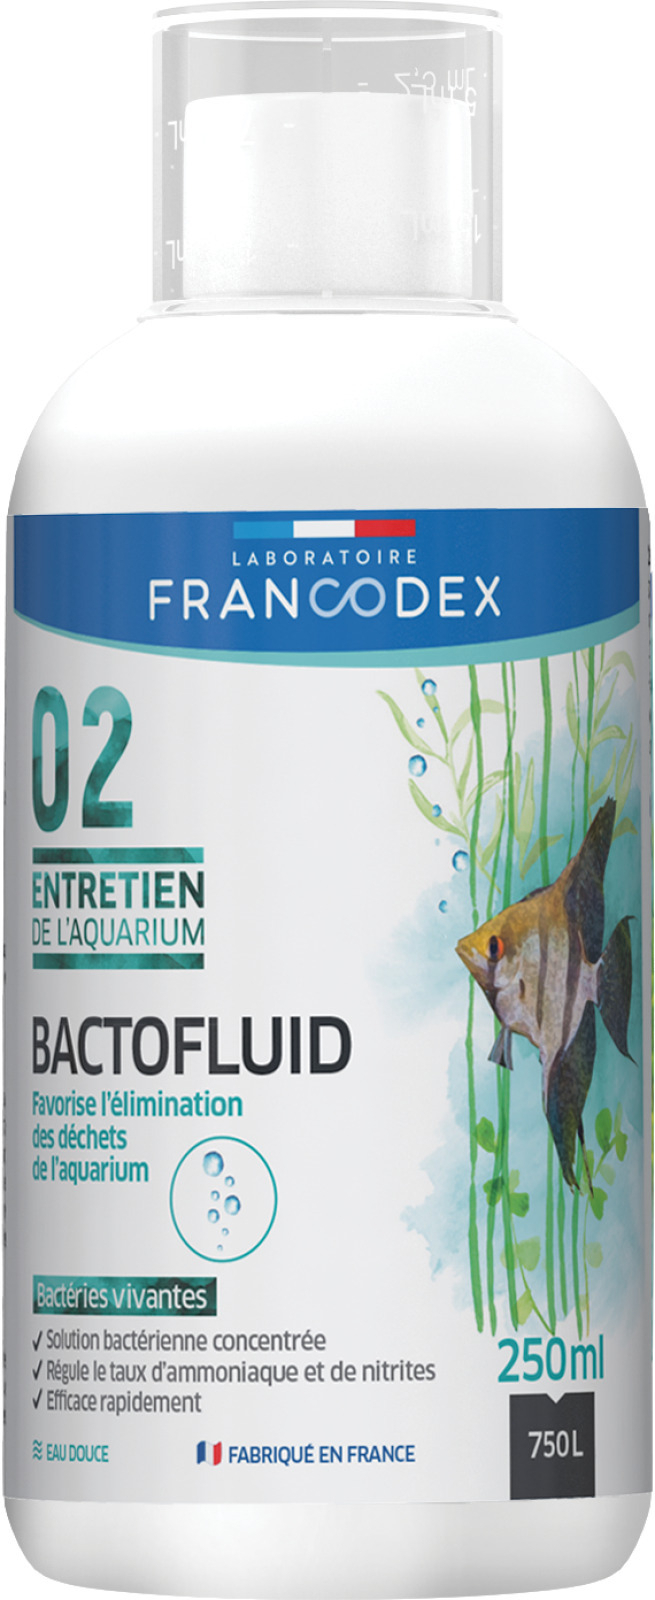 Bactofluid Aquarienpflege FRANCODEX